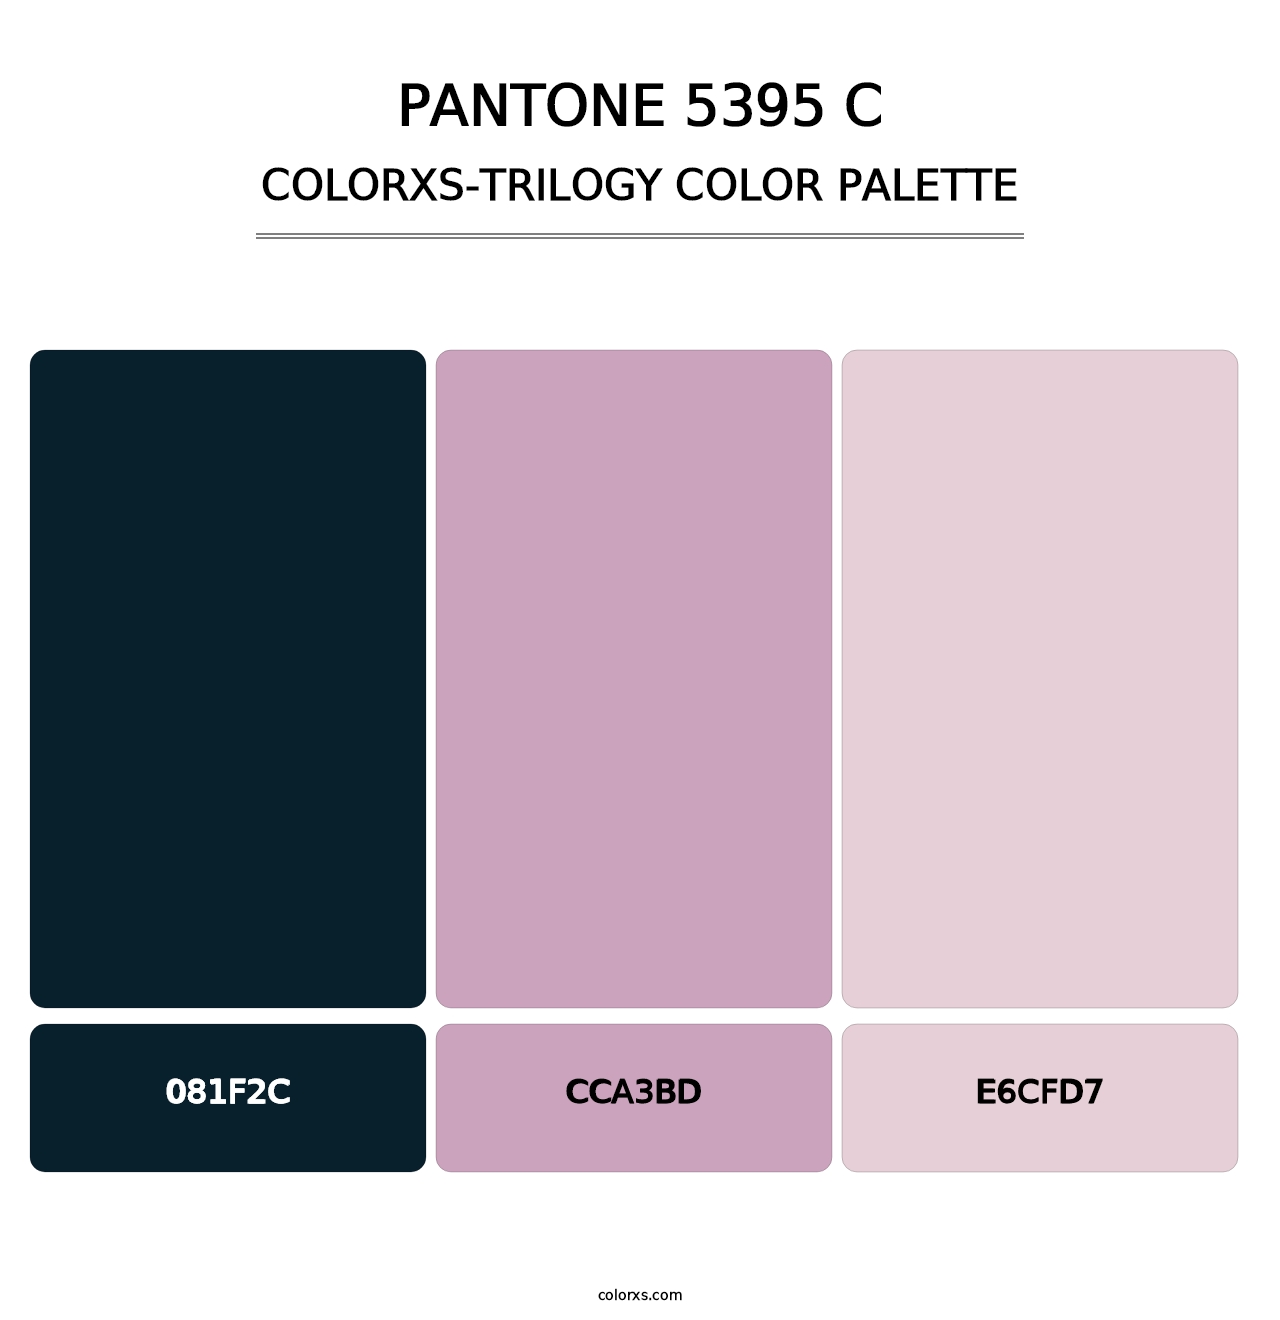 PANTONE 5395 C - Colorxs Trilogy Palette